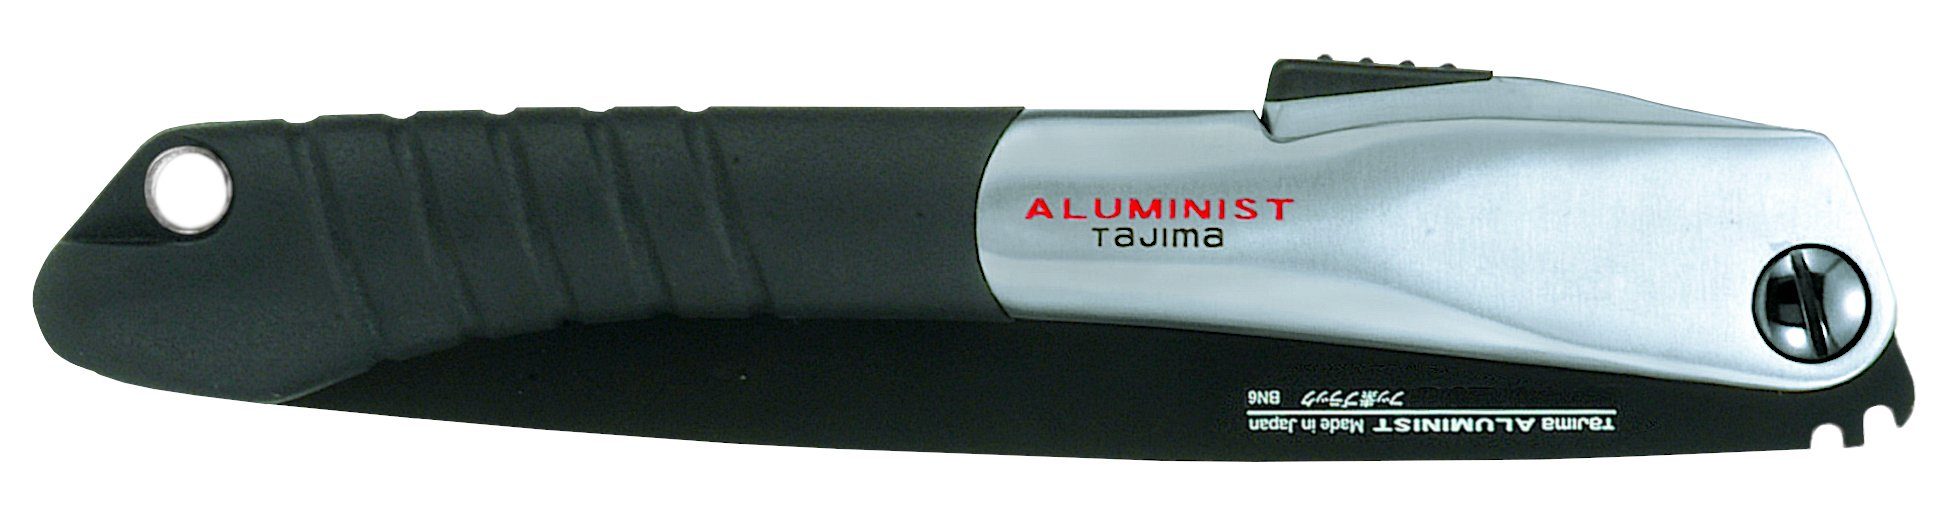 210mm Tajima Aluminist mit Blatt, Handsäge beschichtetem Klappsäge TAJIMA TAJ-17819